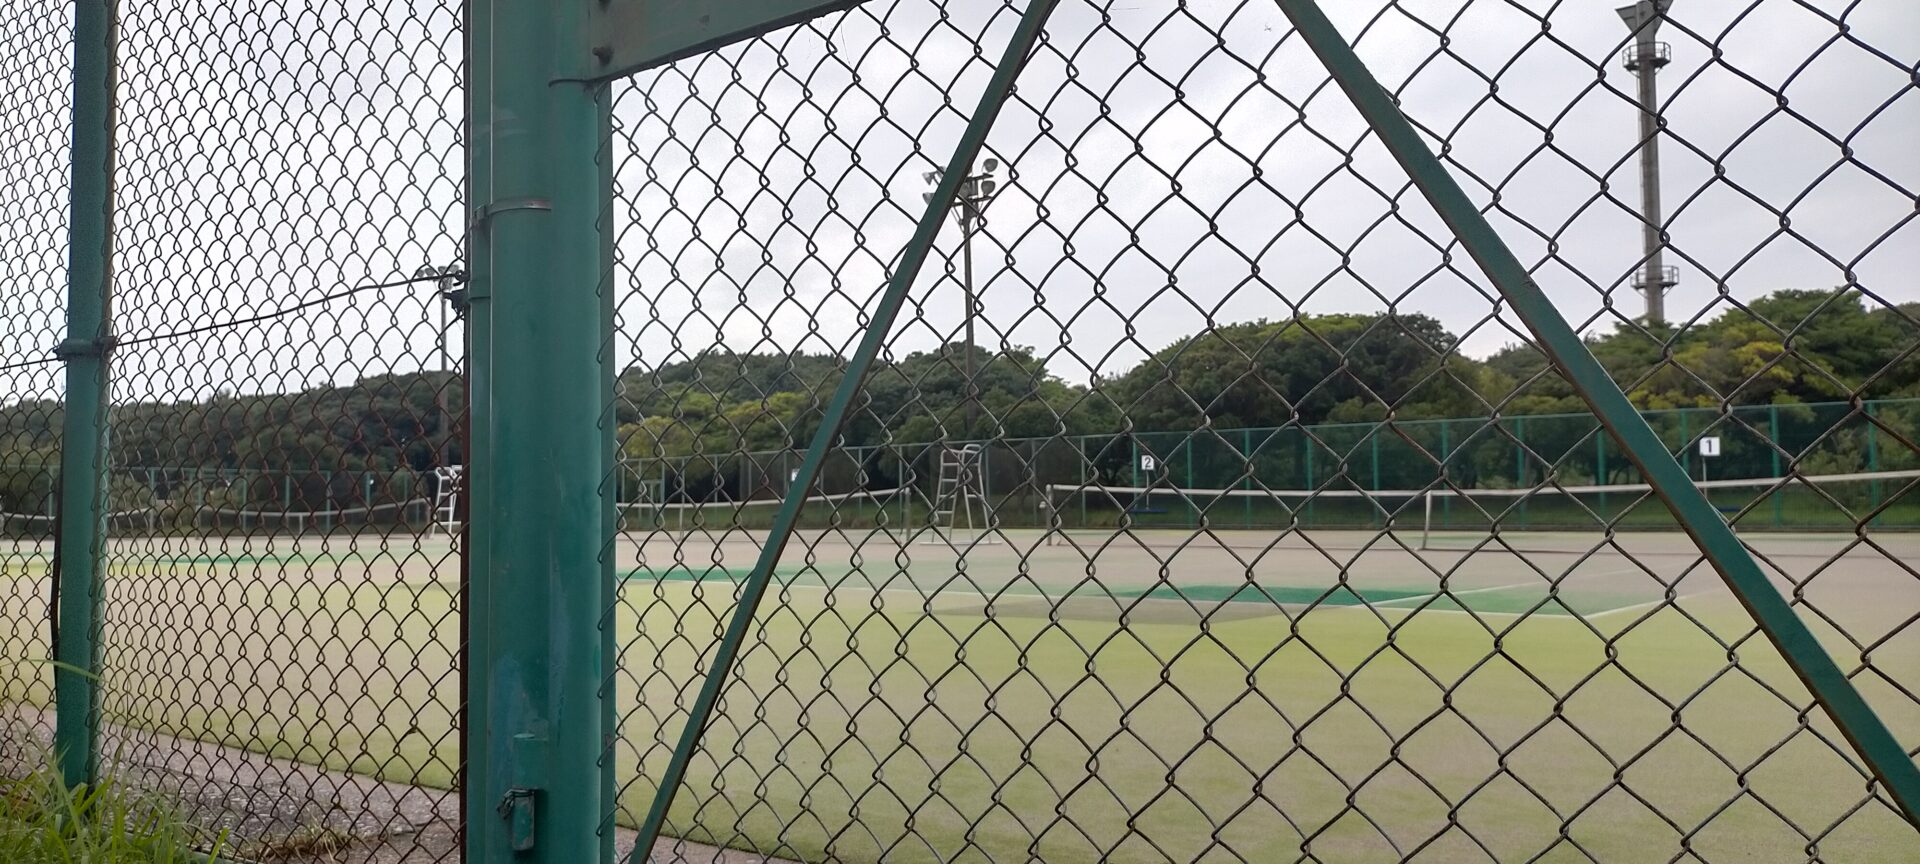 富士見グリーンテニスゾーン